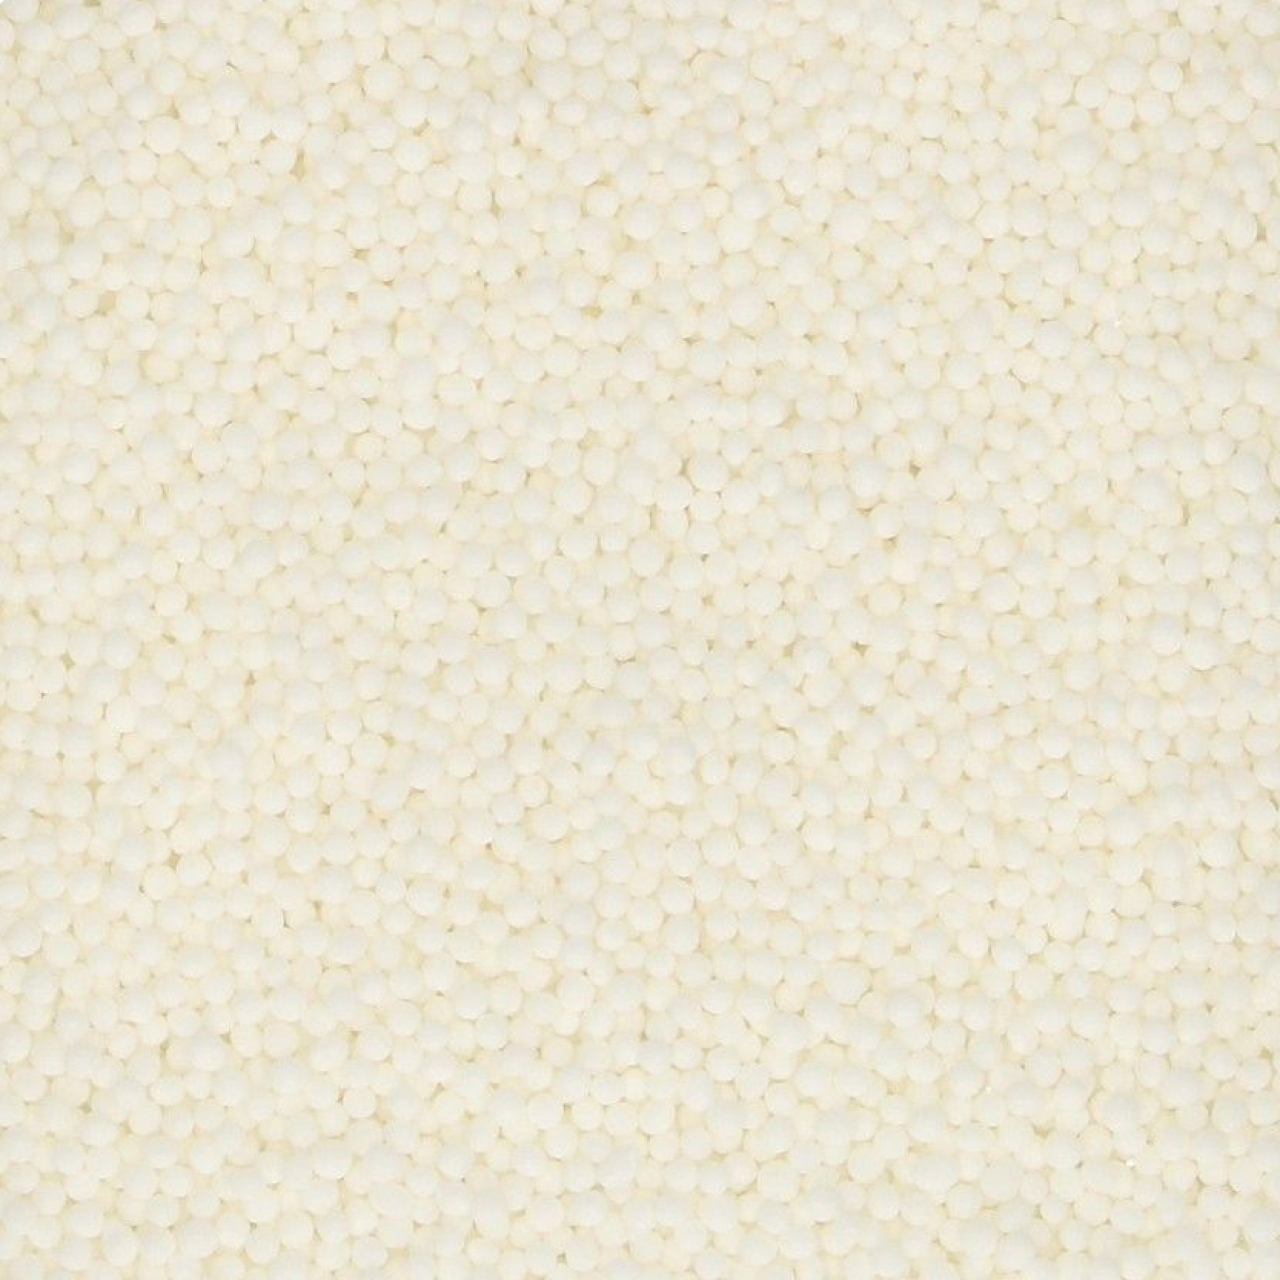 Zuckerperlen "White Nonpareilles", Weiß, 1,5 mm, 80 g, FunCakes